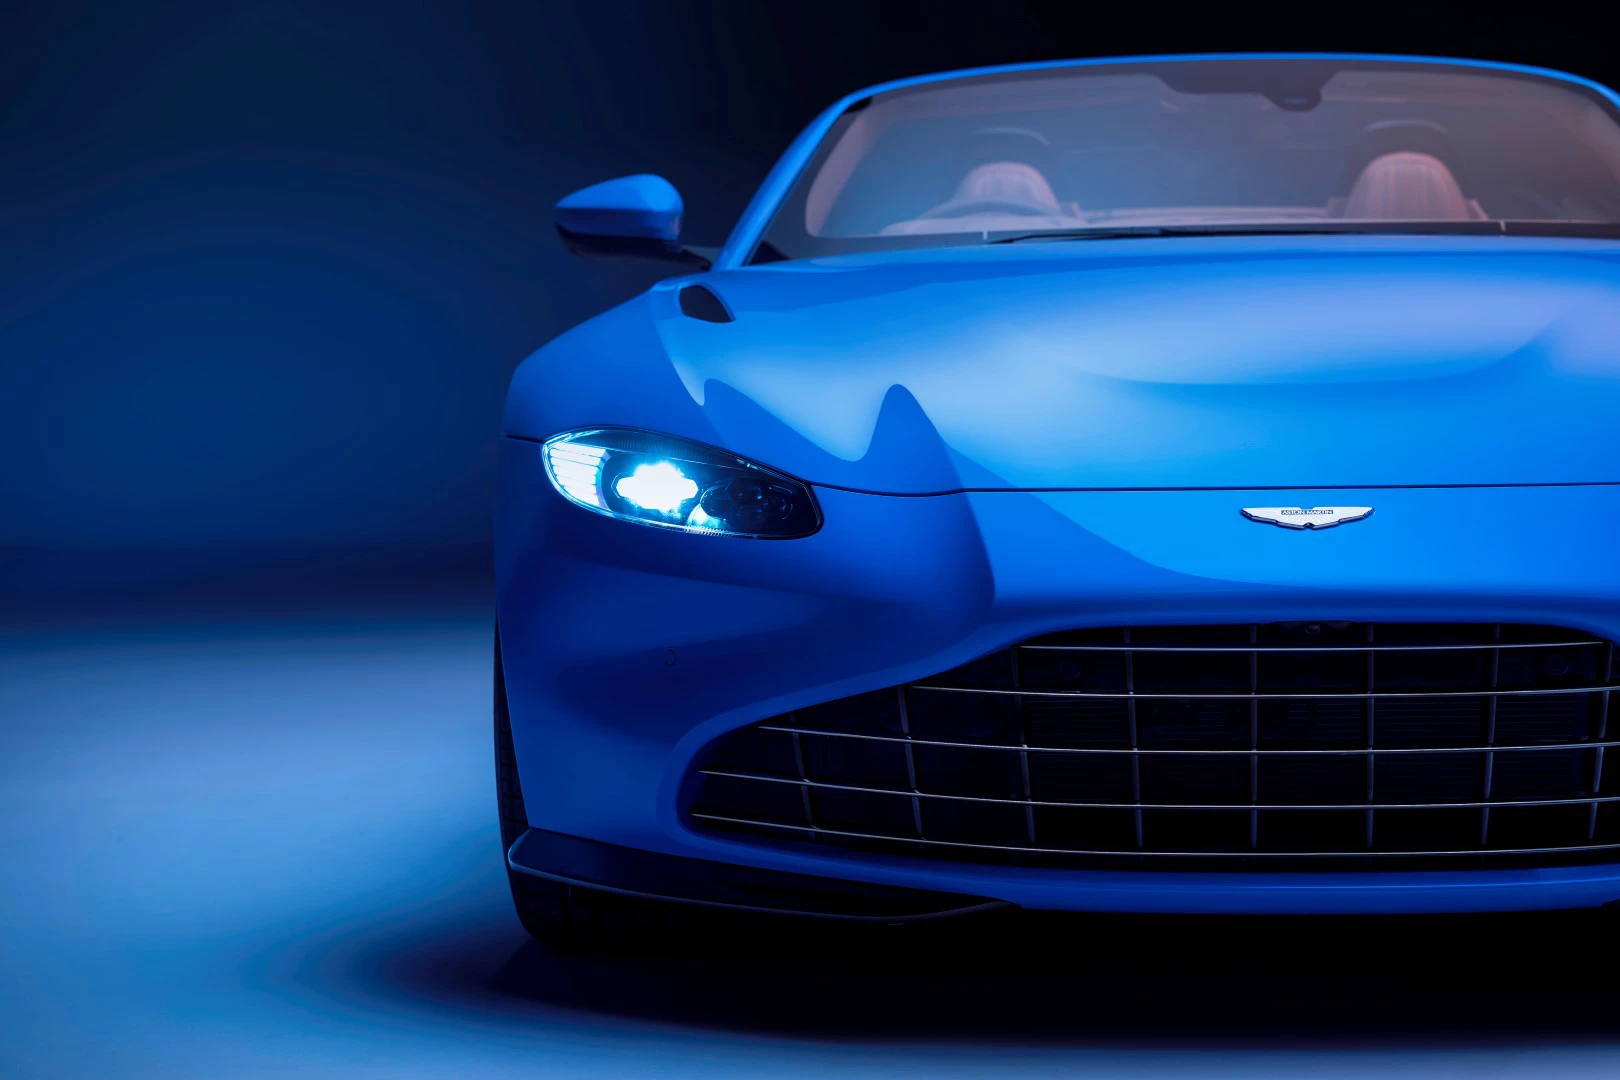 Aston Martin, marka yeniden konumlandırma ve yeni ikonik kanat logosu ile yeni bir çağa giriyor